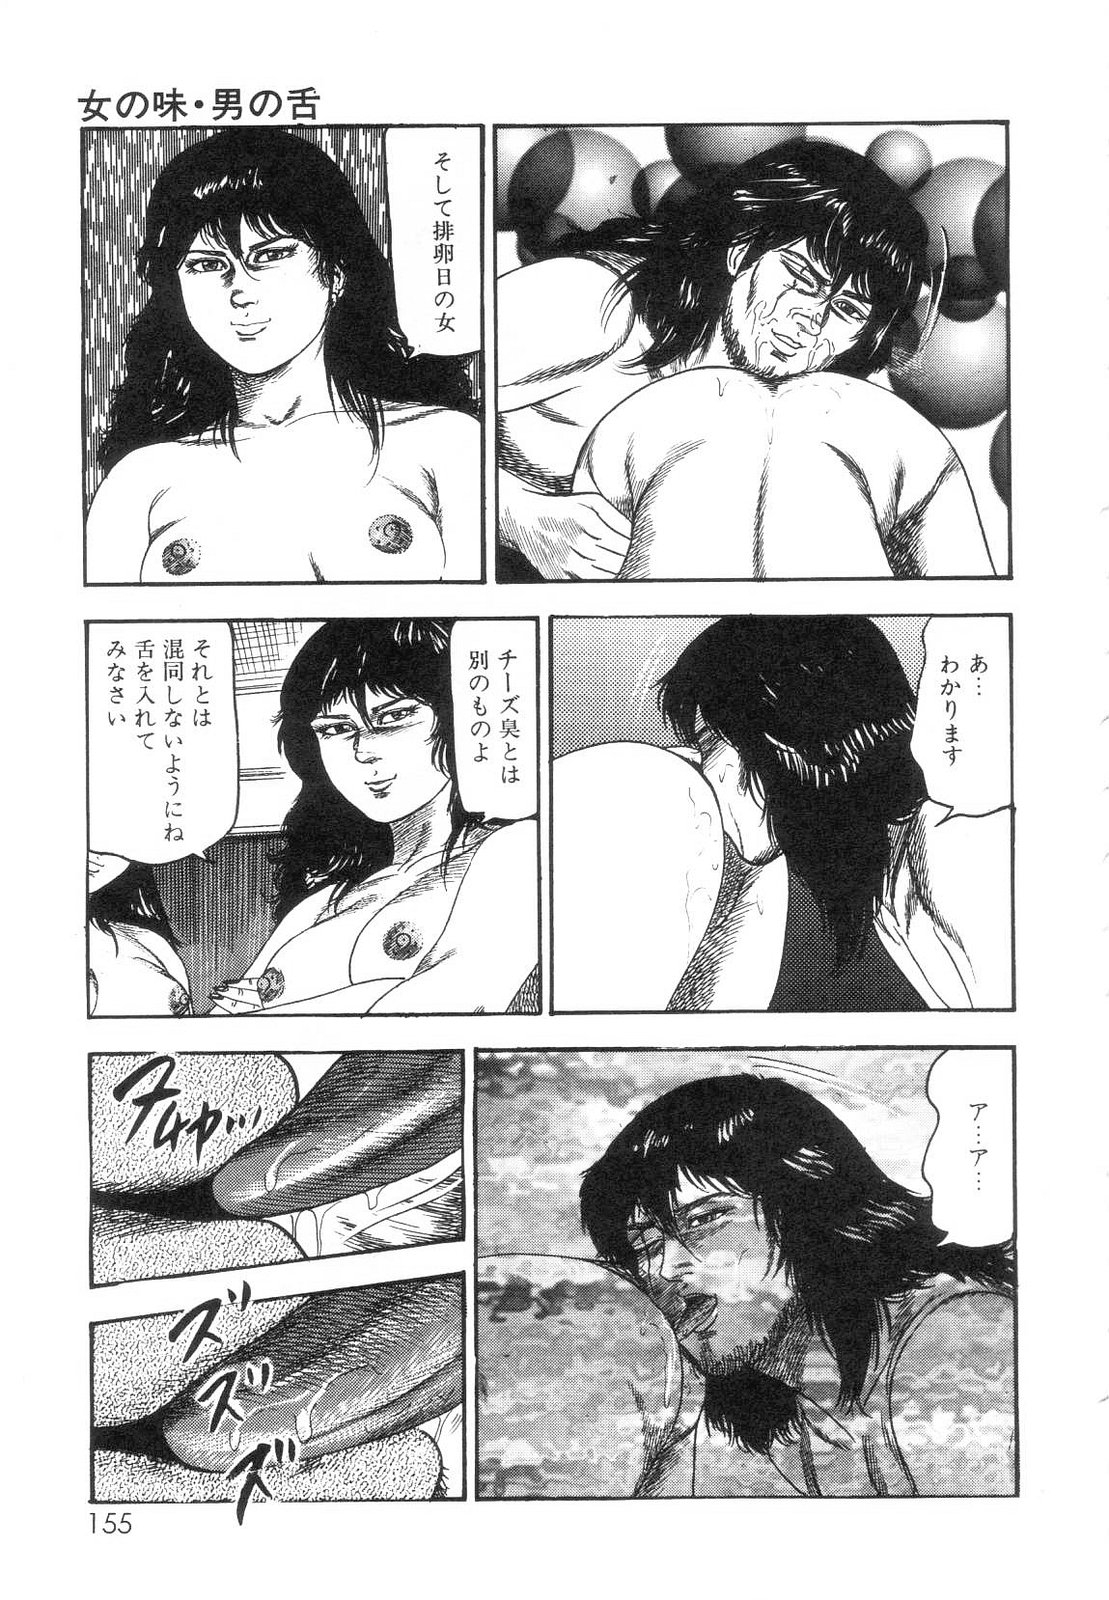 [Sanjou Tomomi] Shiro no Mokushiroku Vol. 7 - Shiiku Ningyou Erika no Shou 156